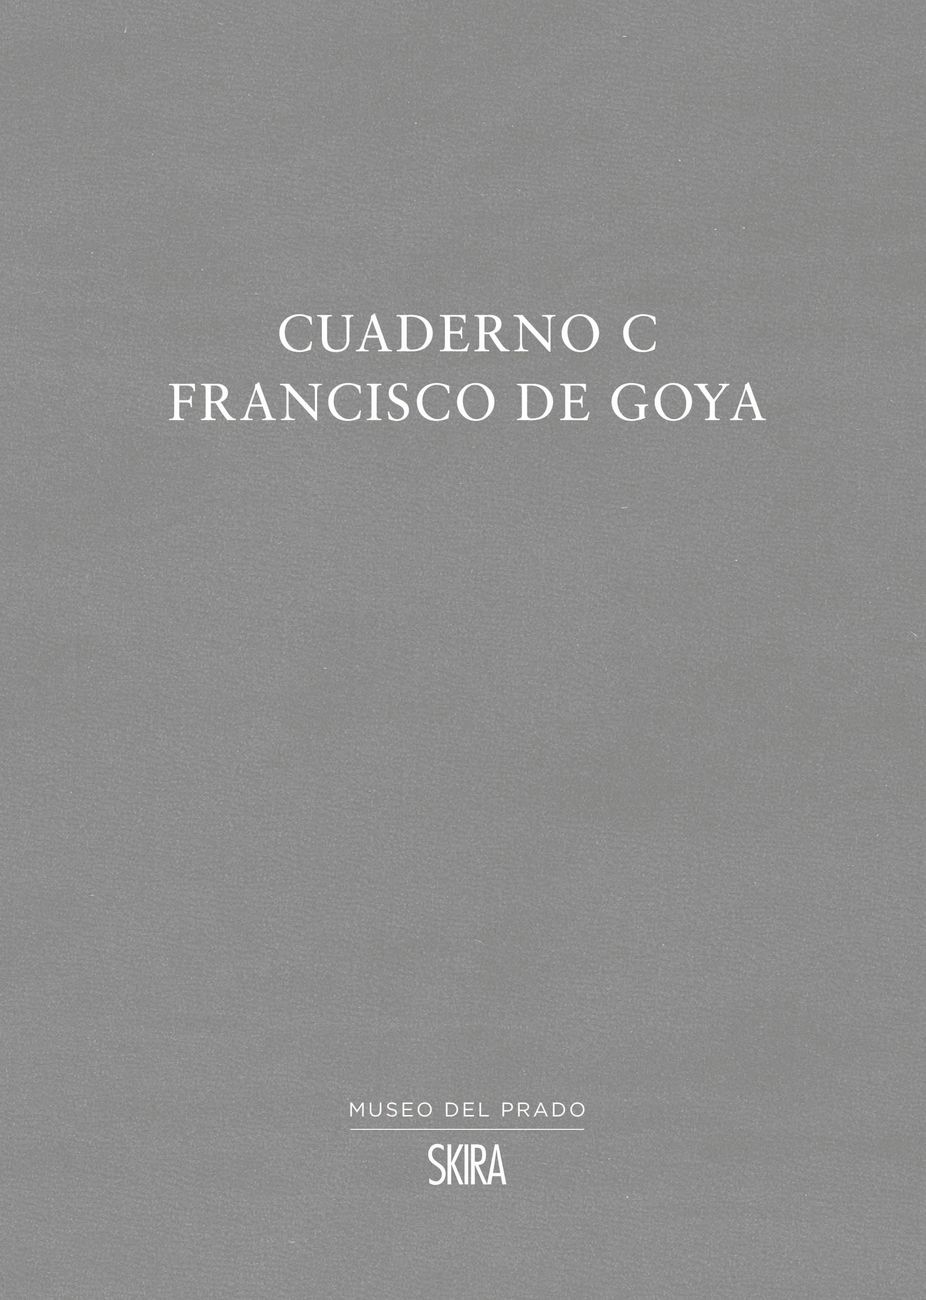 Francisco de Goya – Cuaderno C (Museo del Prado–Skira, Madrid–Milano 2020)